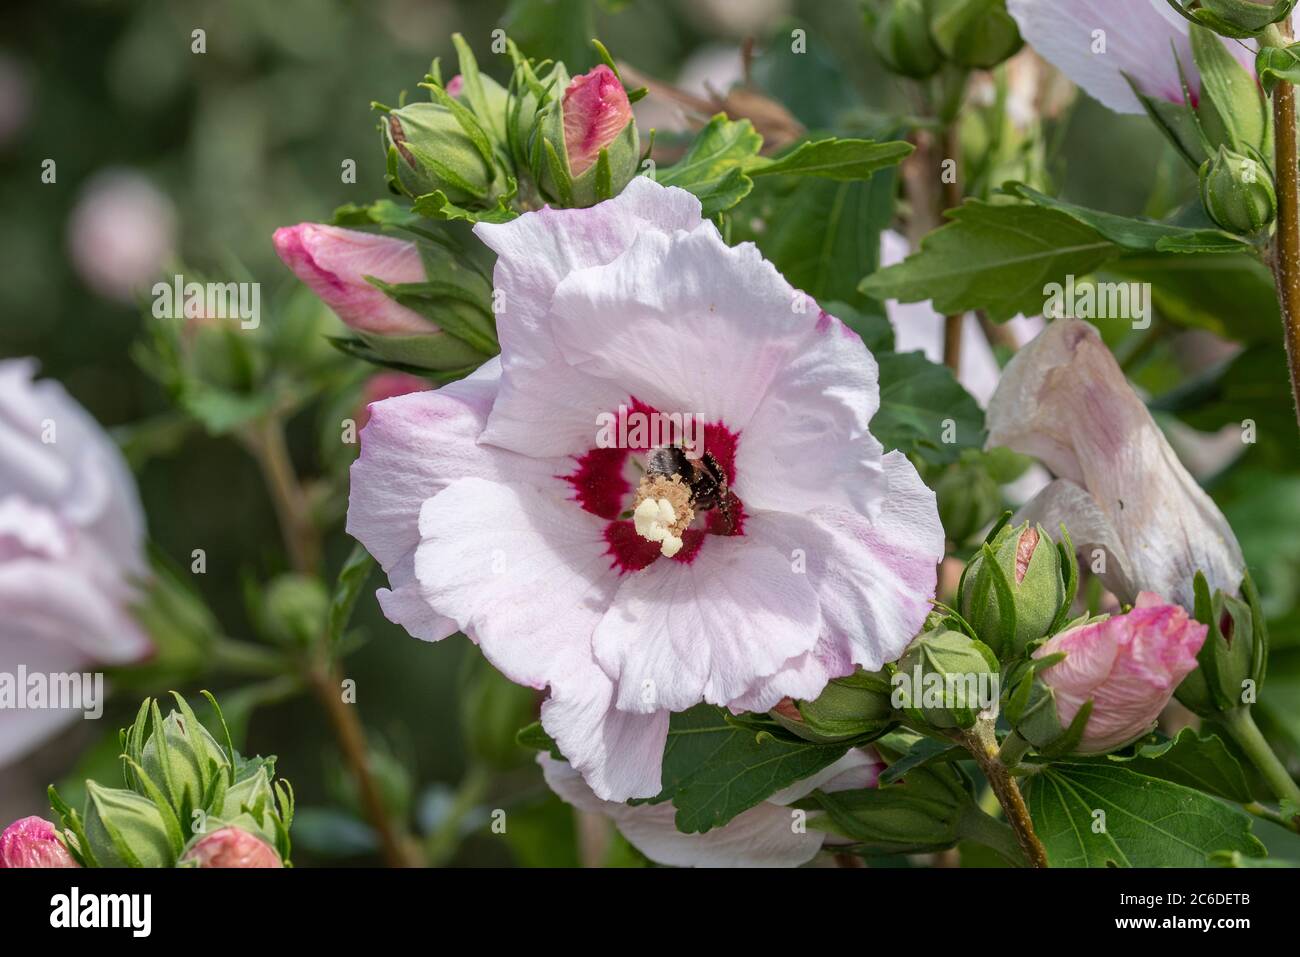 Garten-Eibisch, Hibiscus syriacus Melrose, Garden Hibiscus, Hibiscus syriacus Melrose Stock Photo